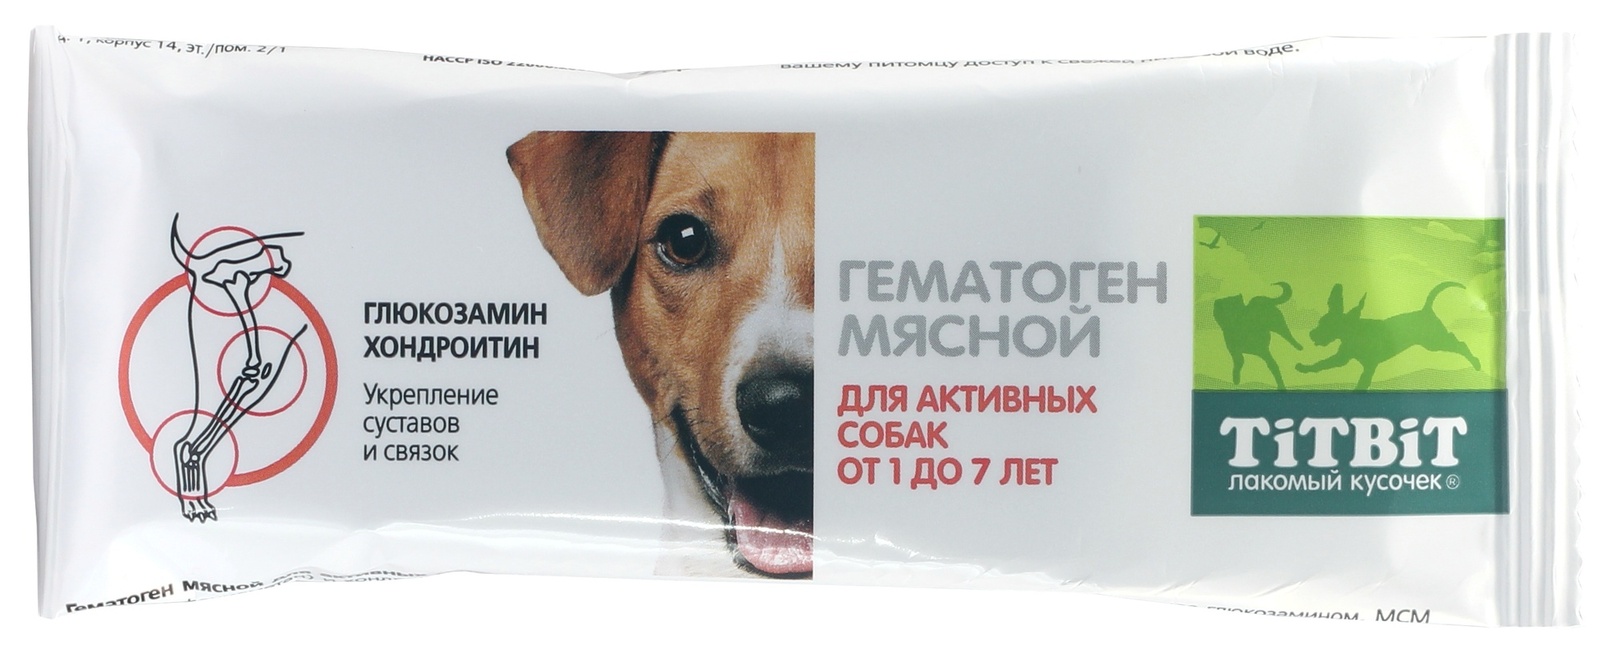 TiTBiT TiTBiT гематоген мясной для активных собак (35 г) schiff move free advanced добавка для здоровья суставов с глюкозамином хондроитином и мсм 120 таблеток покрытых оболочкой